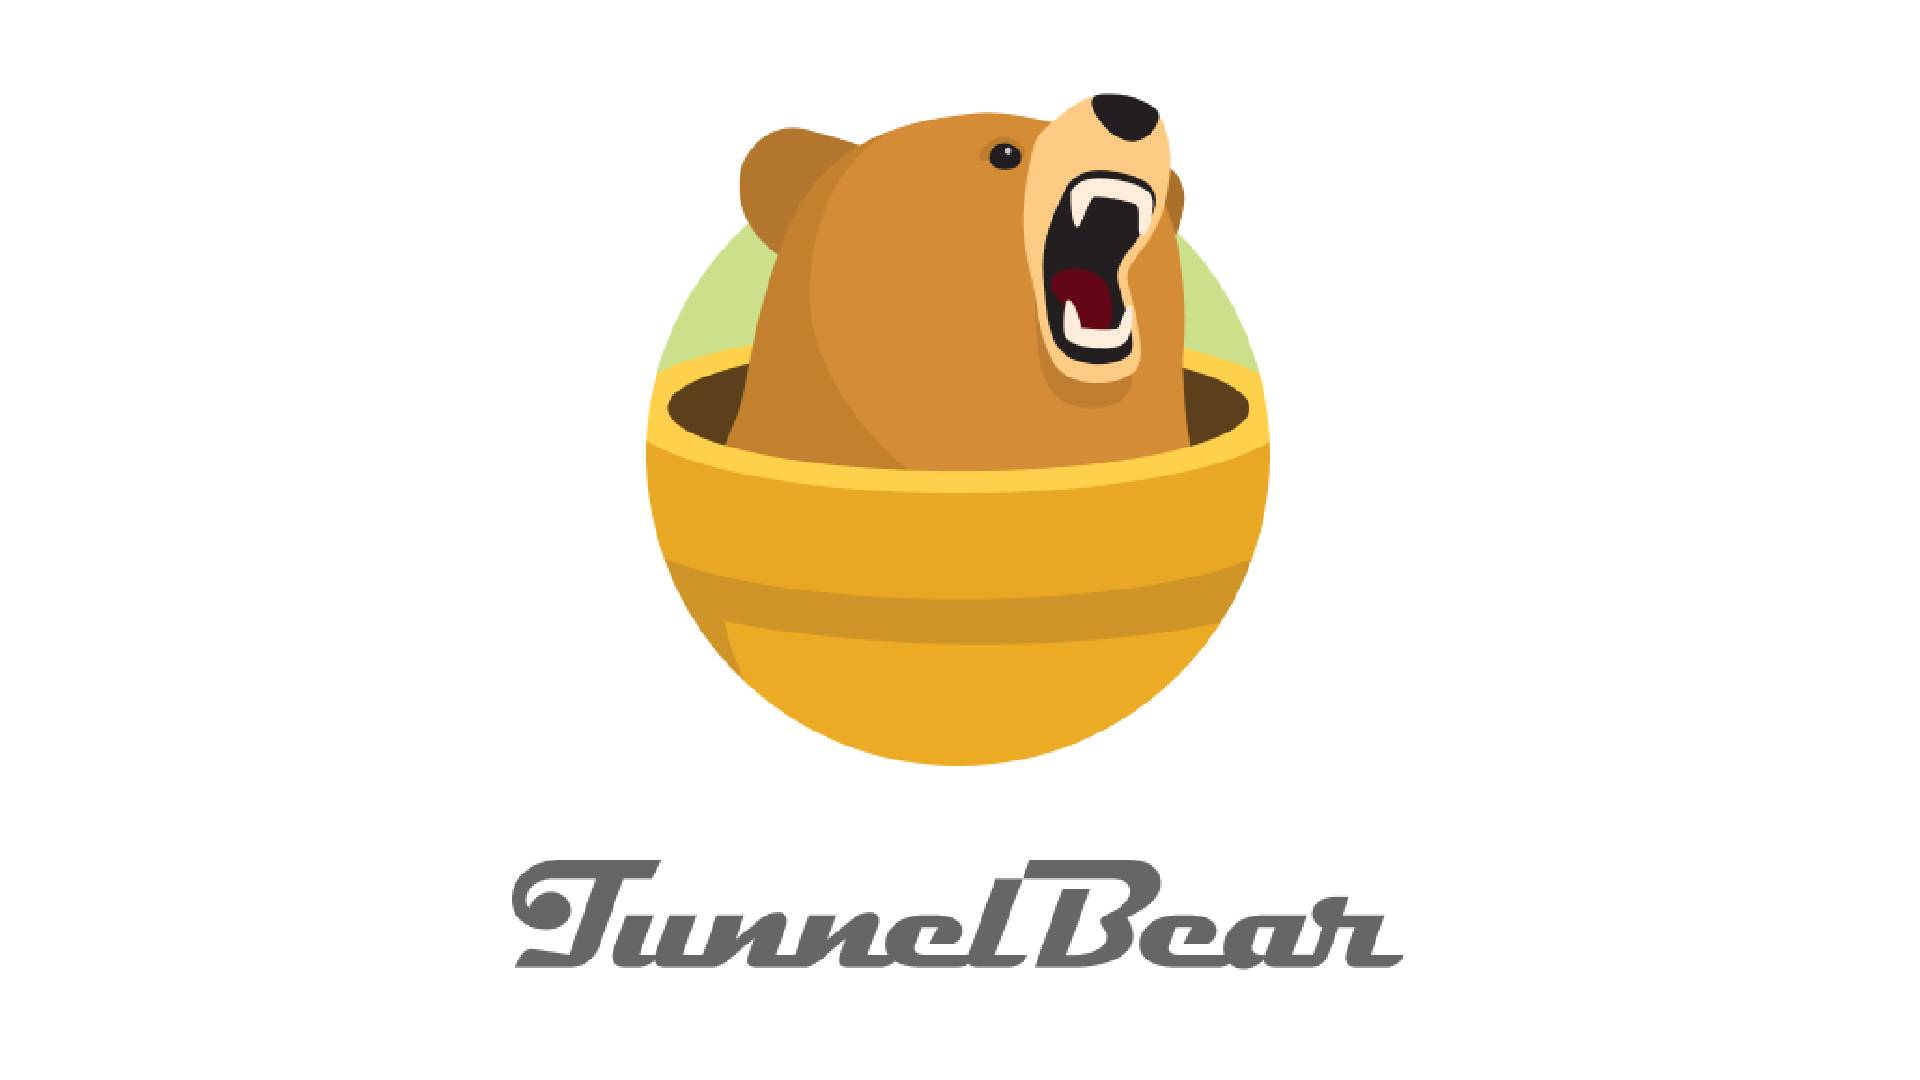 Mejor VPN canadiense: TunnelBear.  La imagen muestra el logotipo de la empresa, con un oso asomando la cabeza por una tubería.